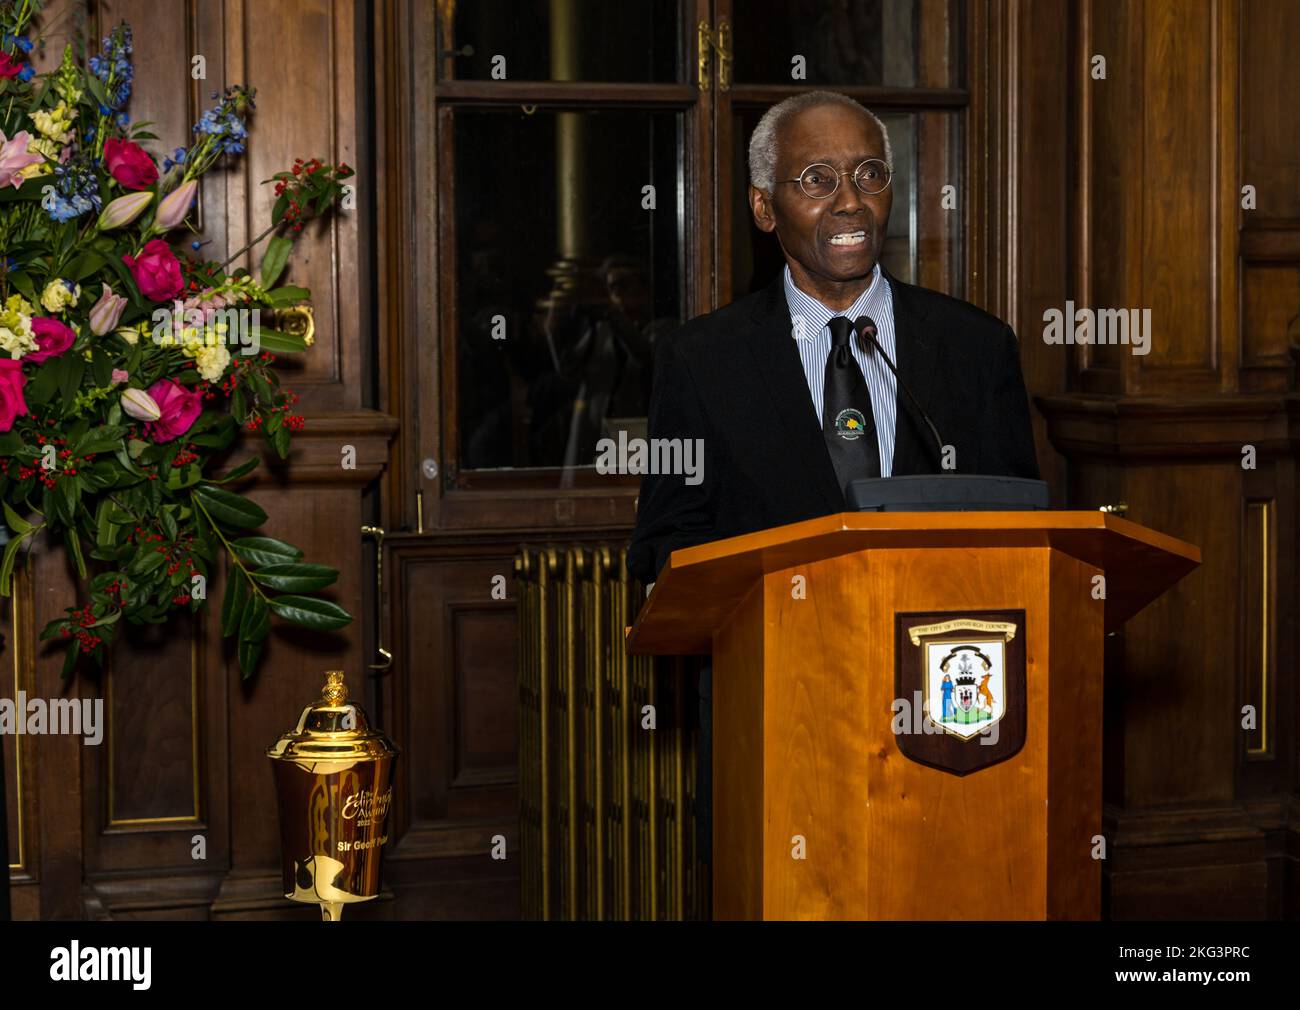 Sir Geoff Palmer prononce un discours lors de la cérémonie de remise des prix d'Édimbourg, City Chambers, Écosse, Royaume-Uni Banque D'Images